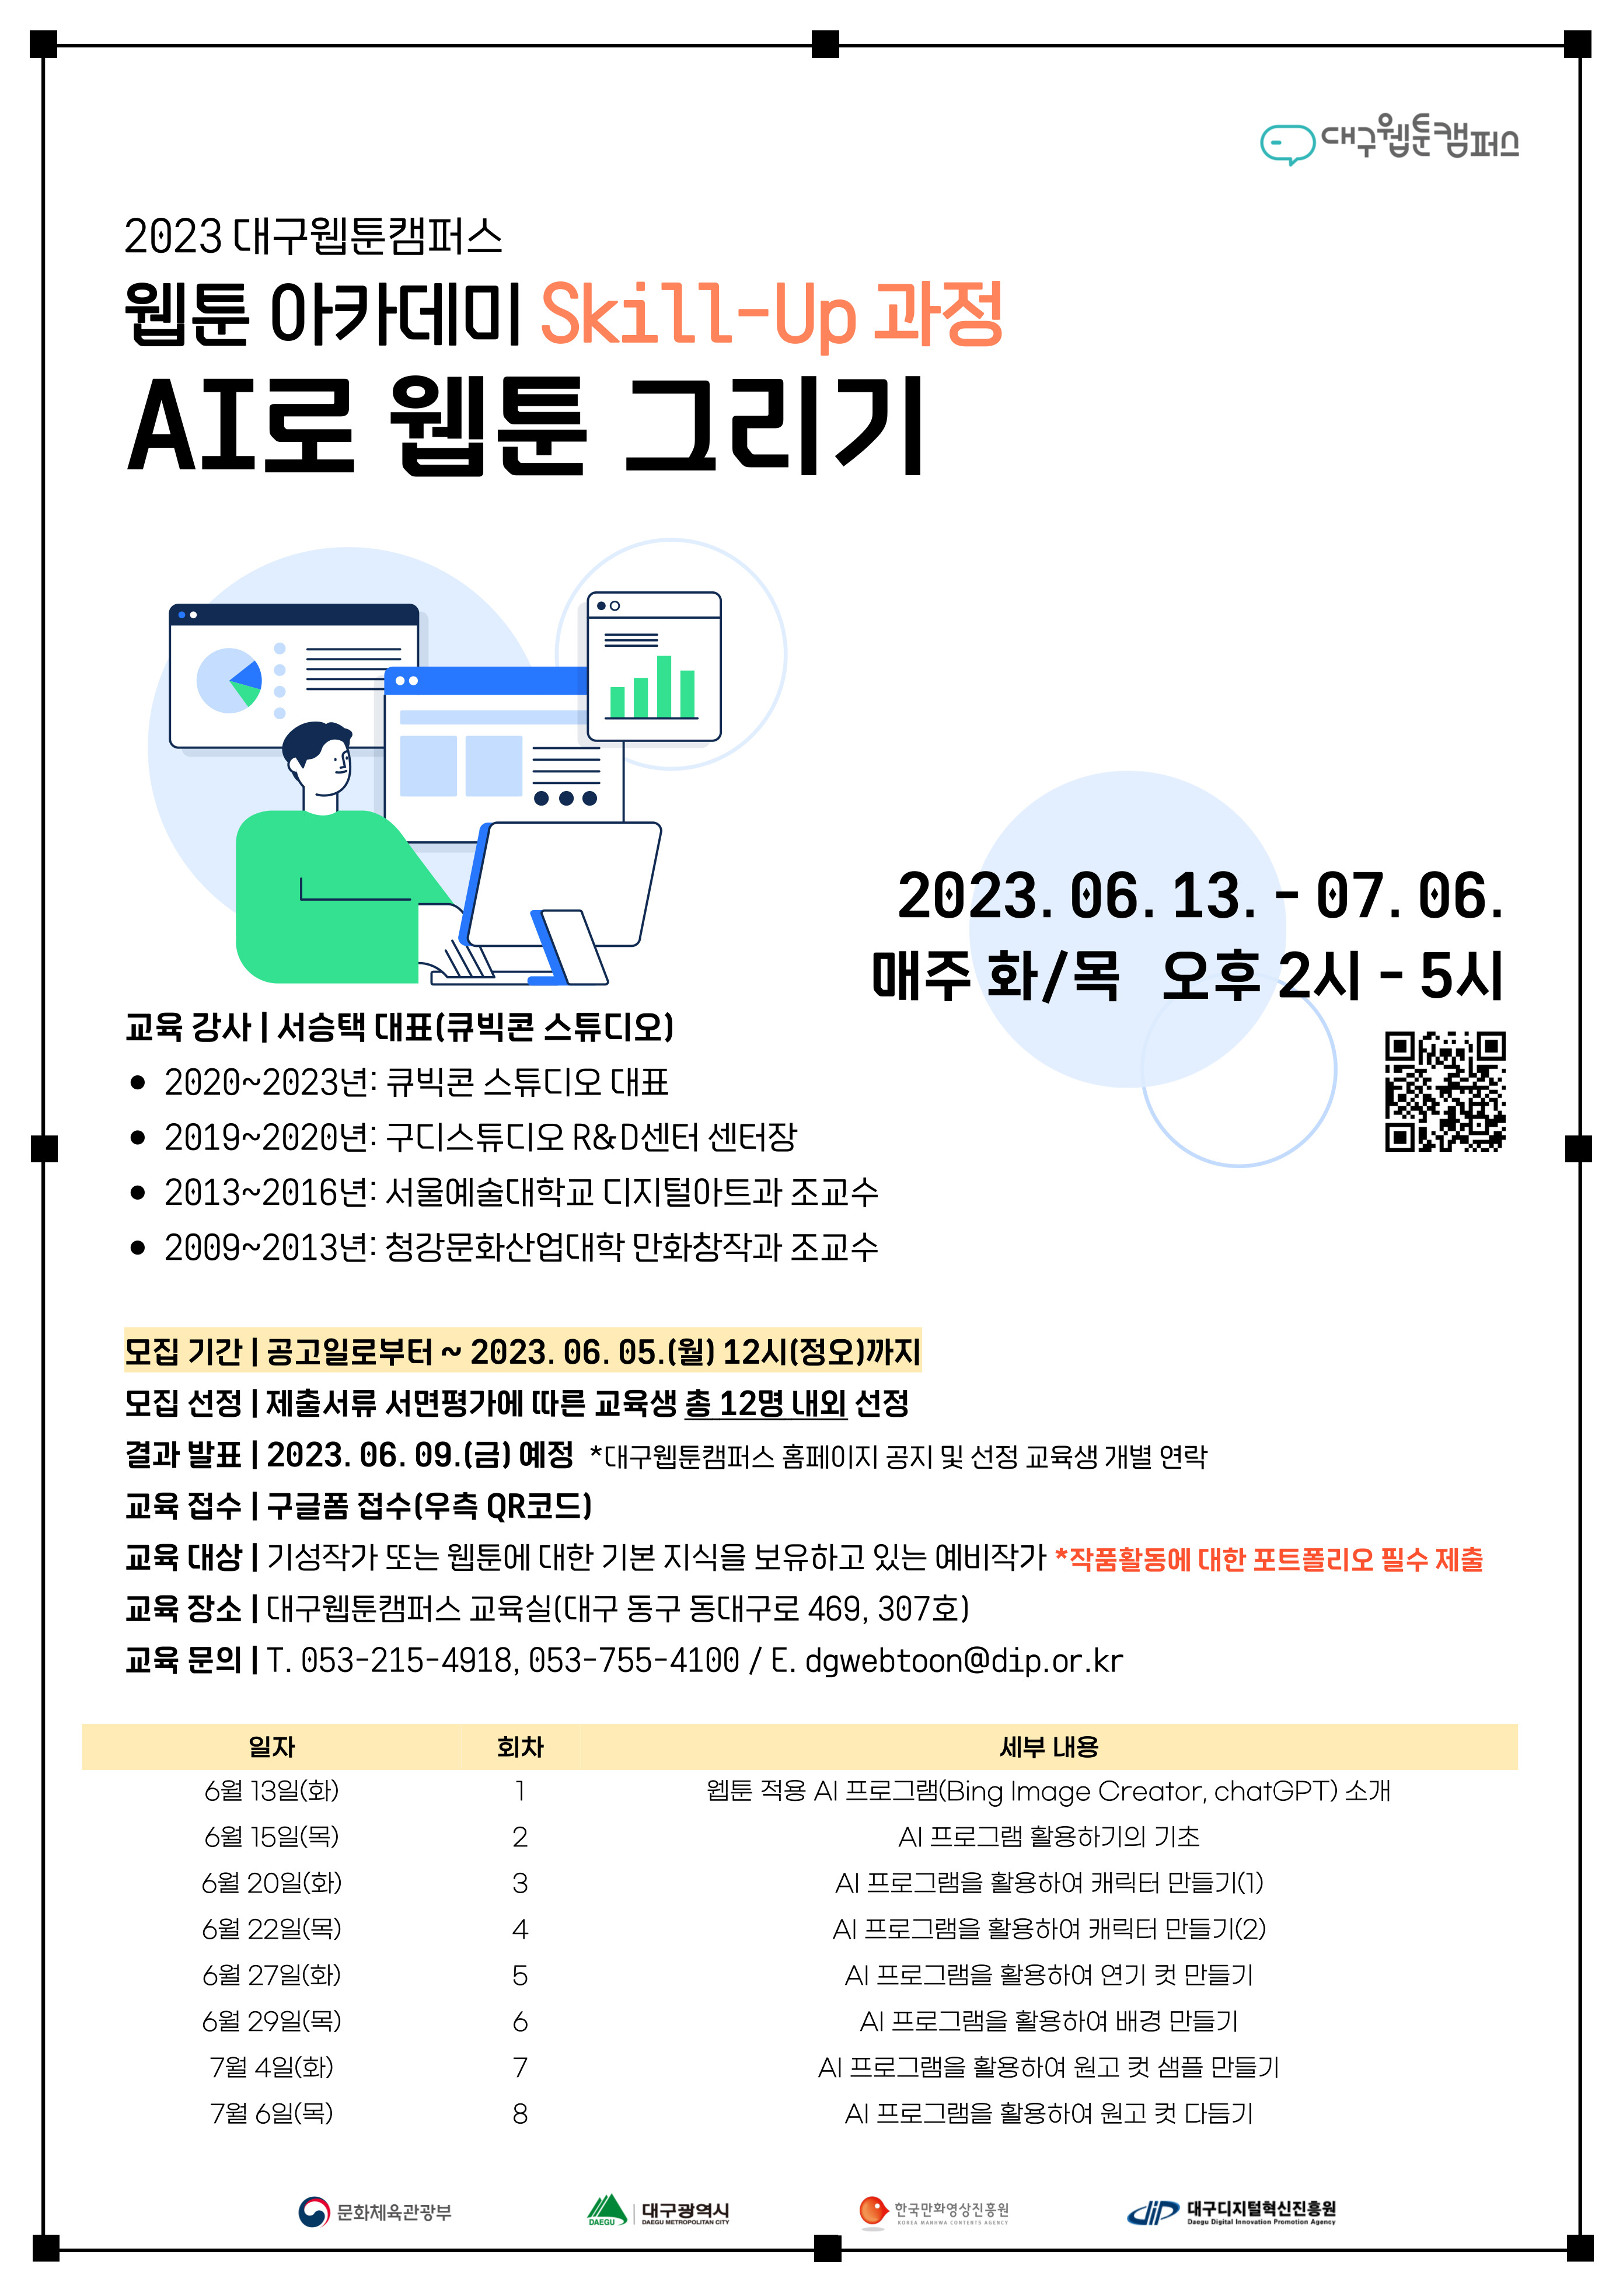 2023 대구웹툰캠퍼스 <웹툰 아카데미 Skill-Up 과정: AI로 웹툰 그리기> 교육 참가자 모집